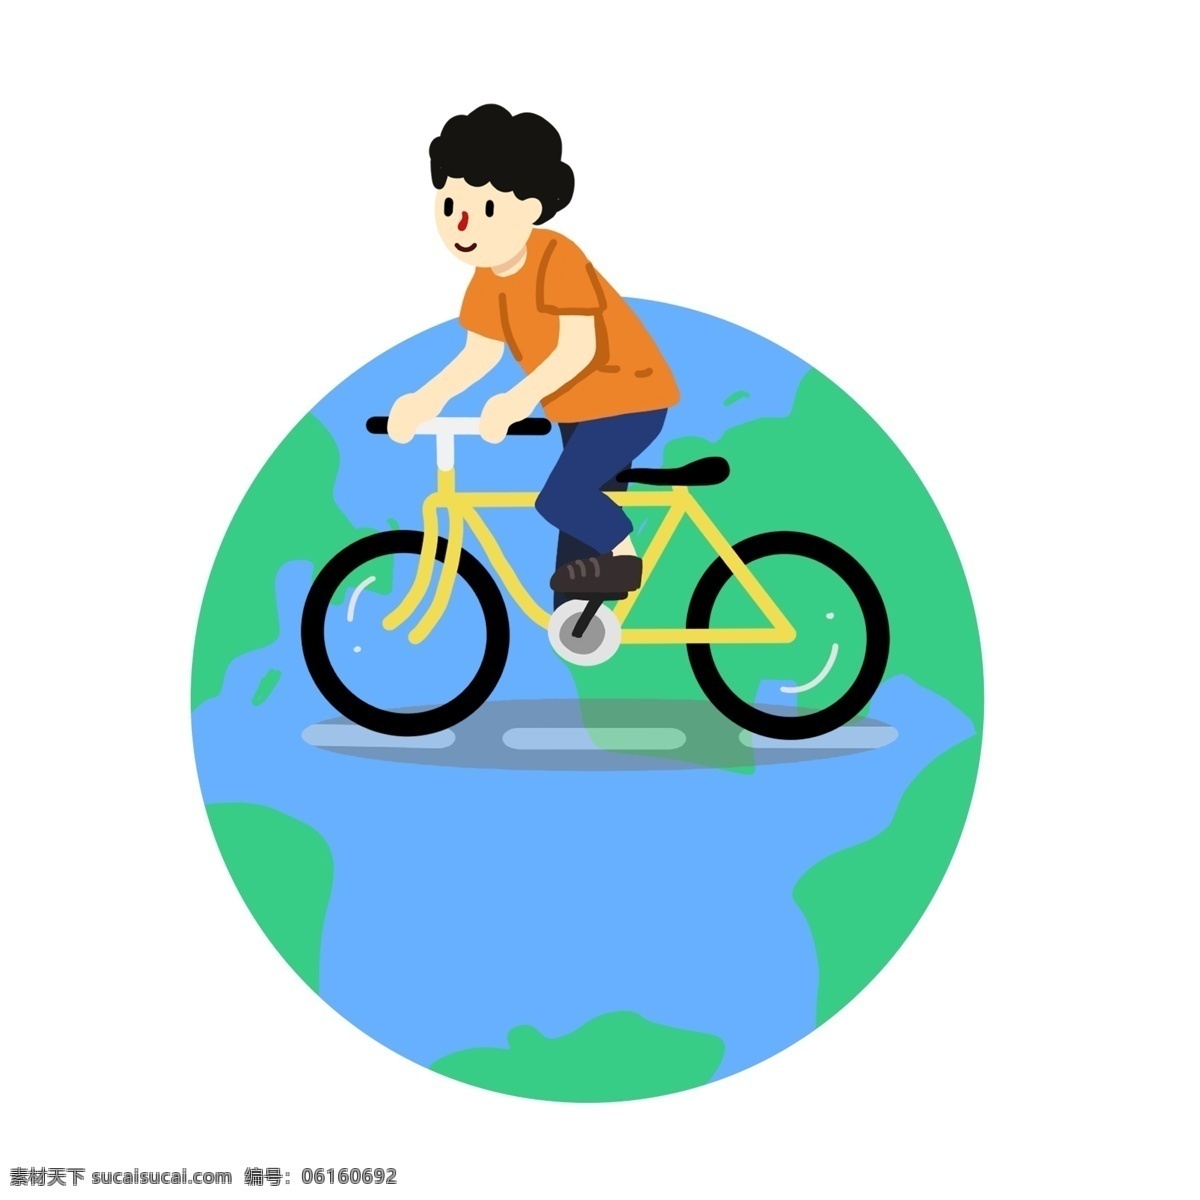 世界 地球日 绿色 出行 骑 行 世界地球日 环保 环保地球 爱护地球 绿色世界 骑自行车 锻炼 健身 绿色环境 地球 骑行 绿色出行 自行车 运动